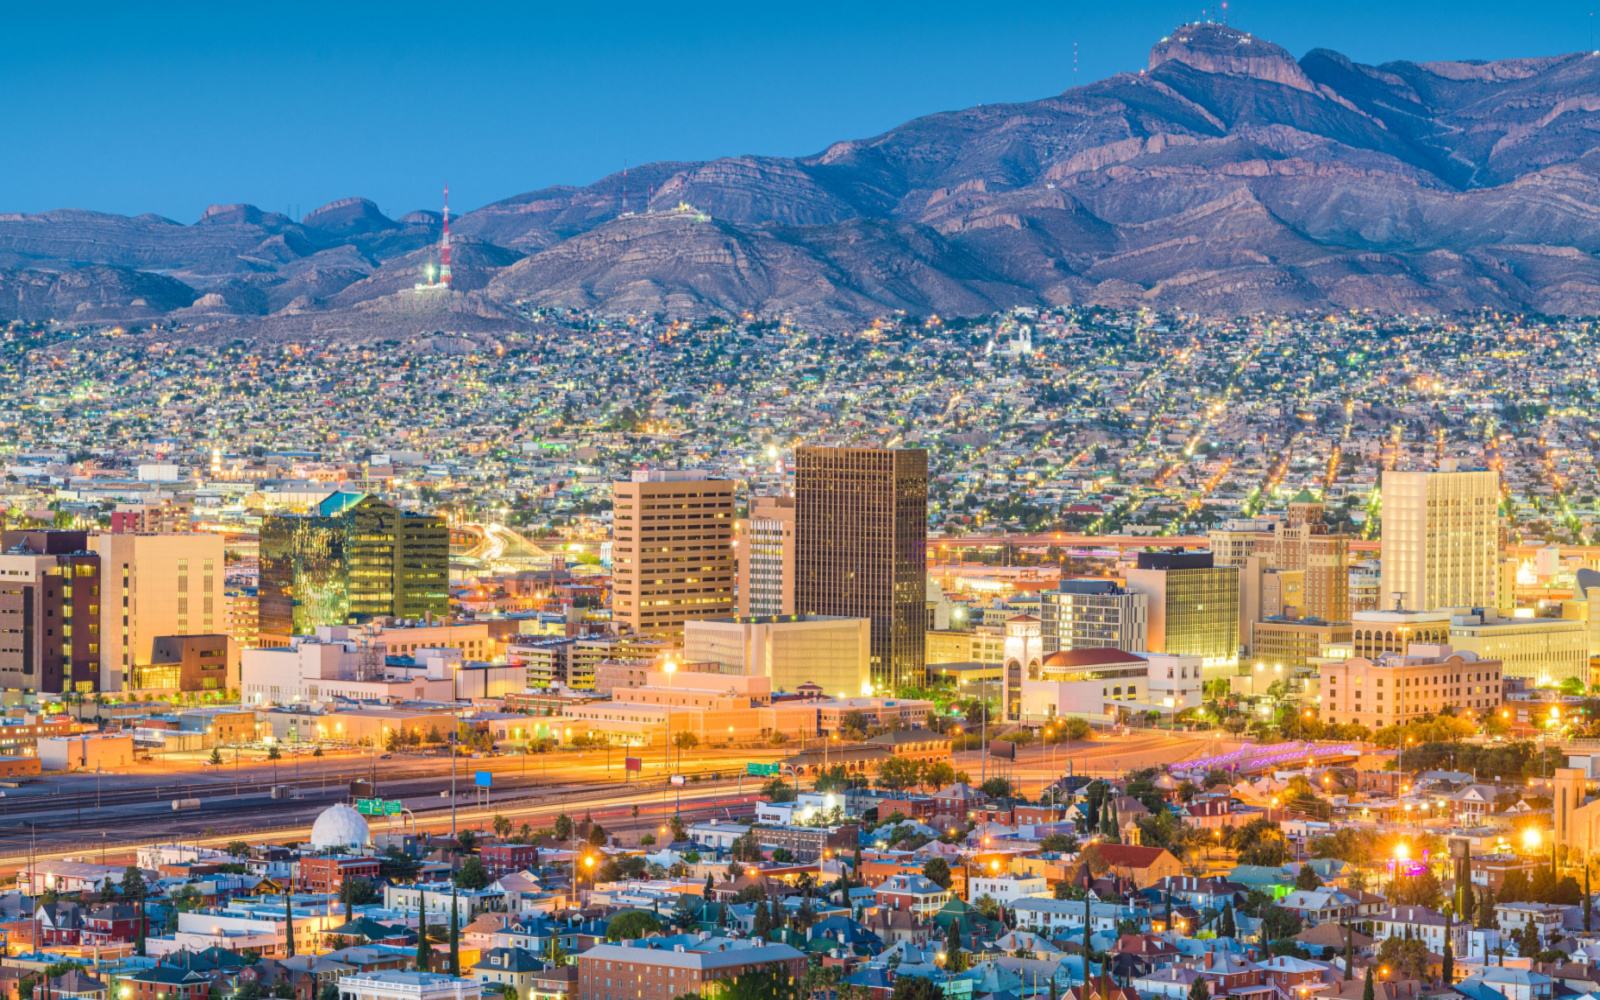 Is El Paso Safe? | Travel Tips & Safety Concerns